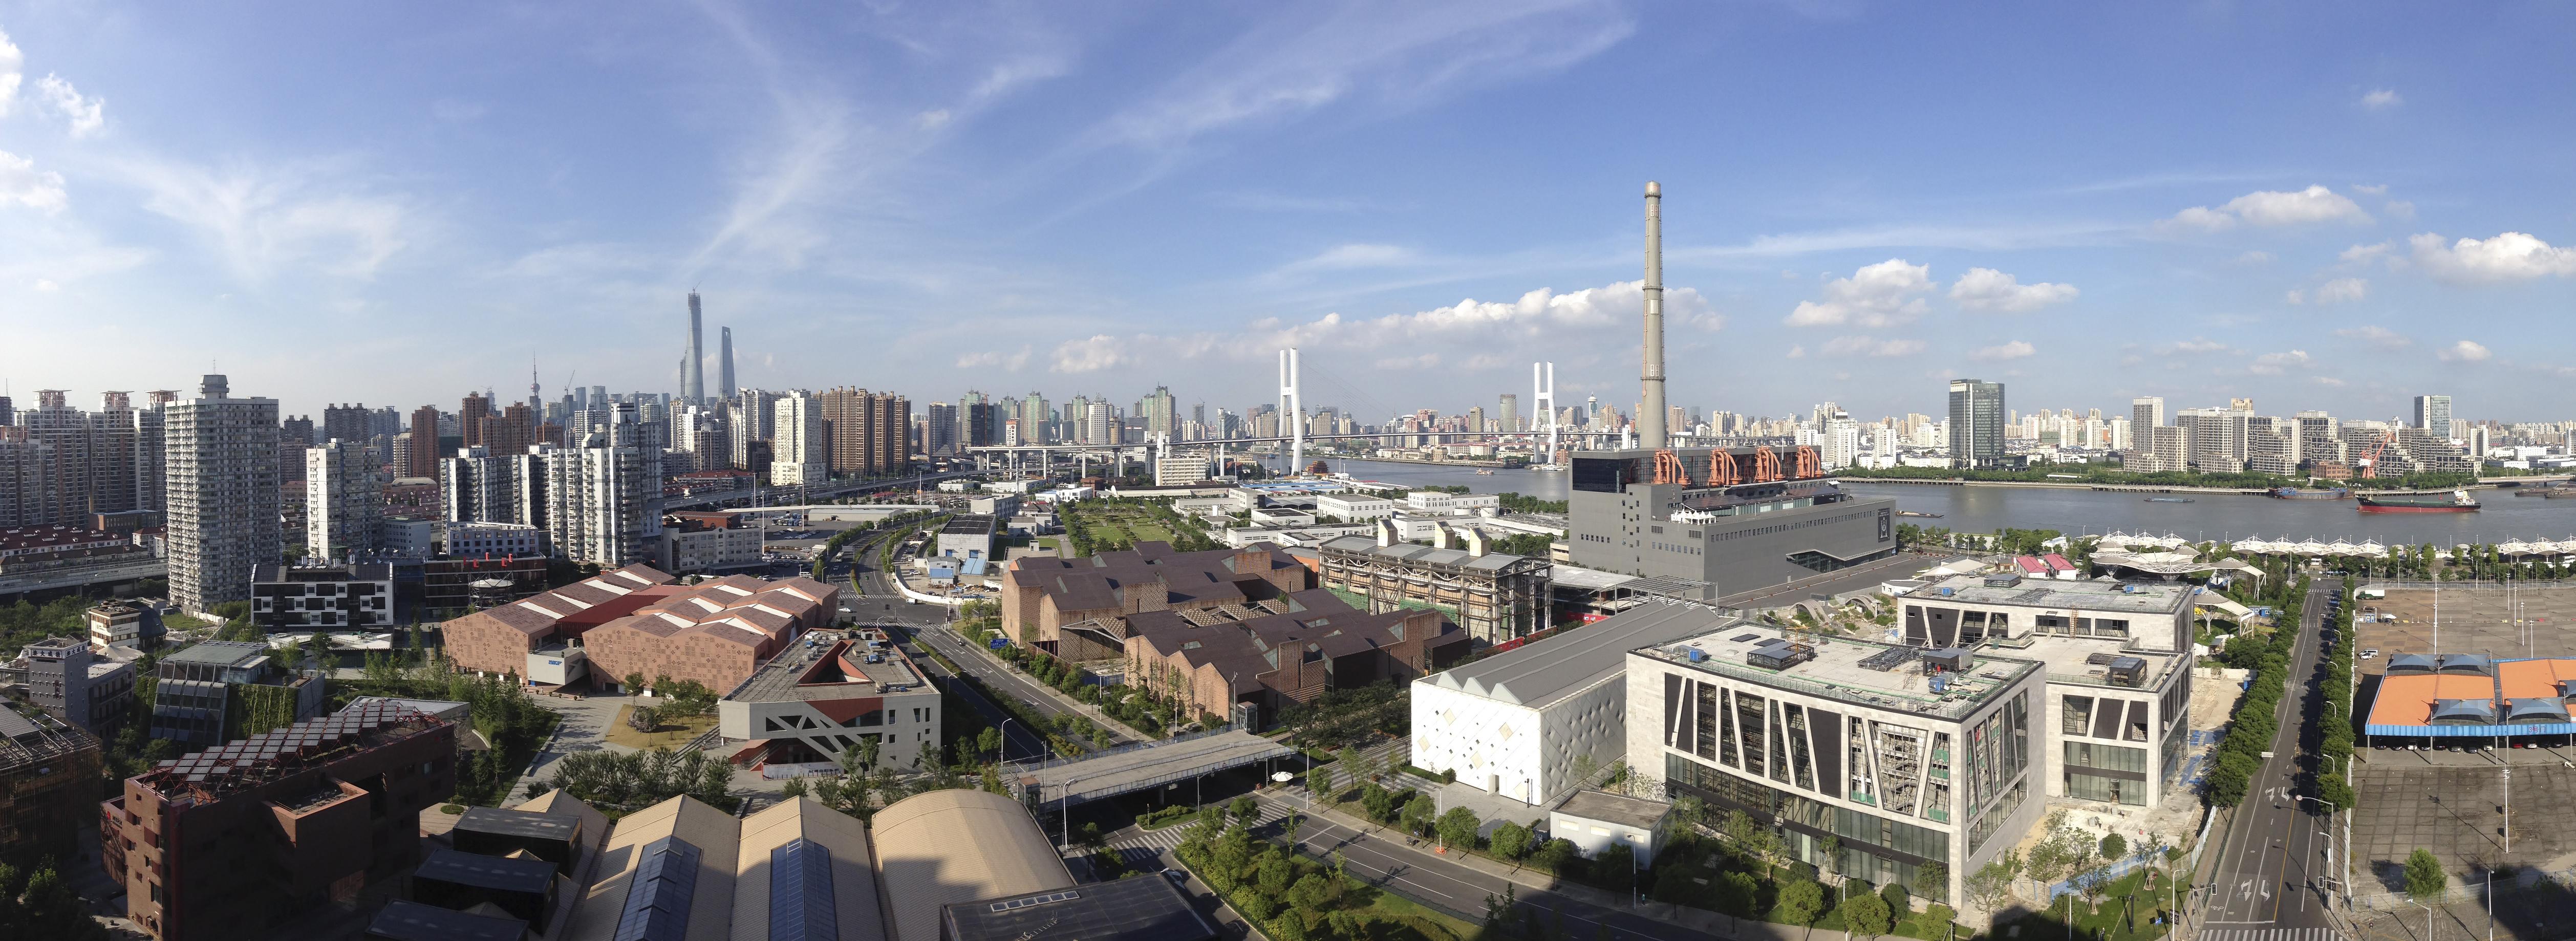 上海世博城市最佳实践区